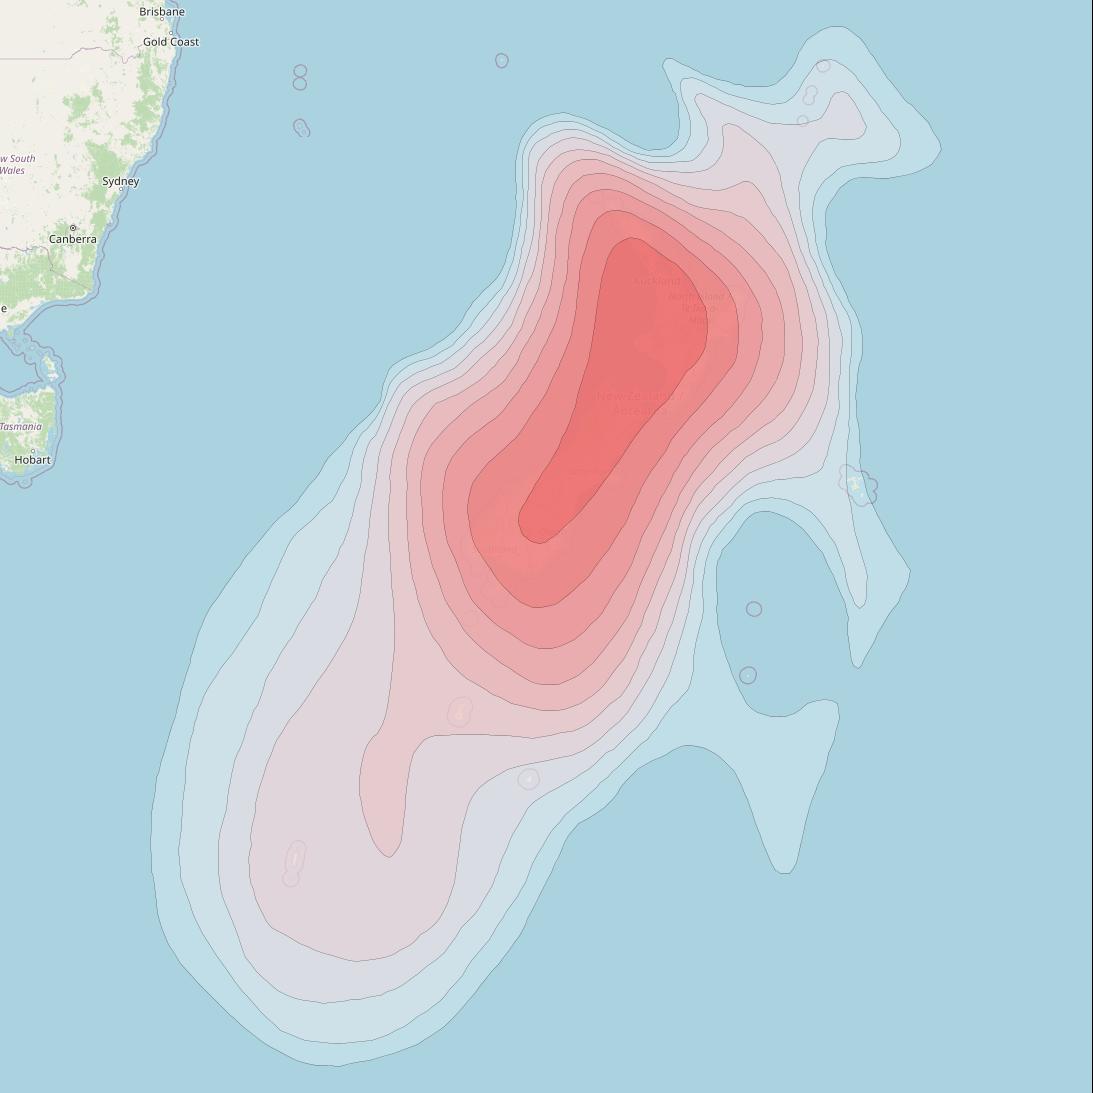 Optus D1 at 160° E downlink Ku-band FNZB Beam coverage map